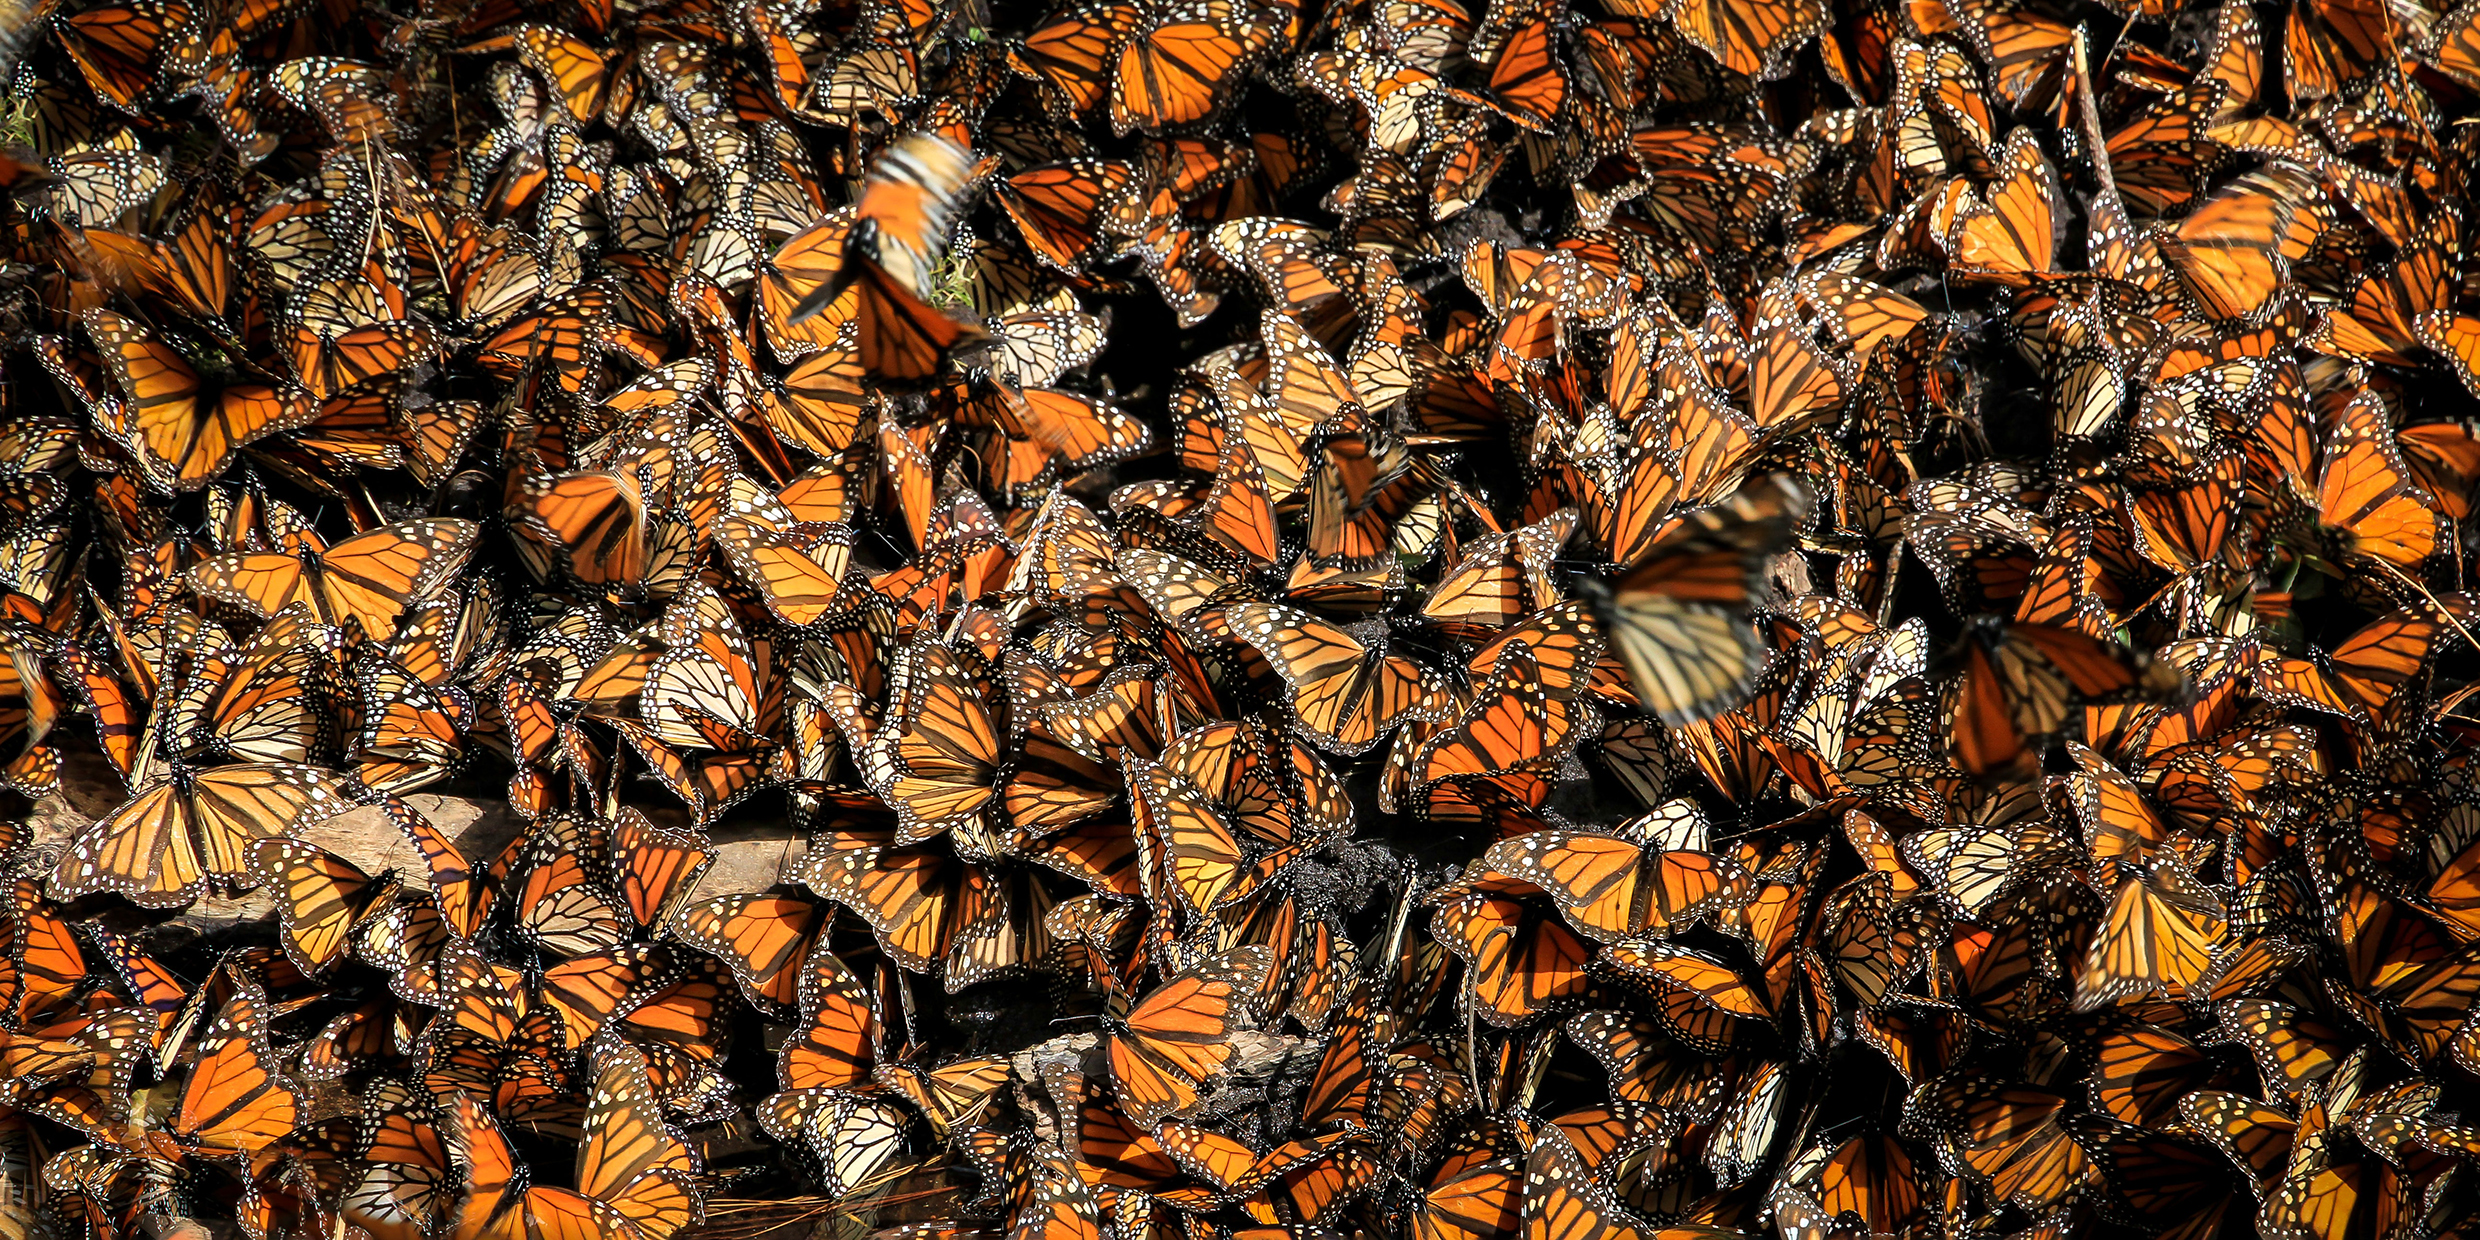 Flutter of monarchs inspires gushy prose